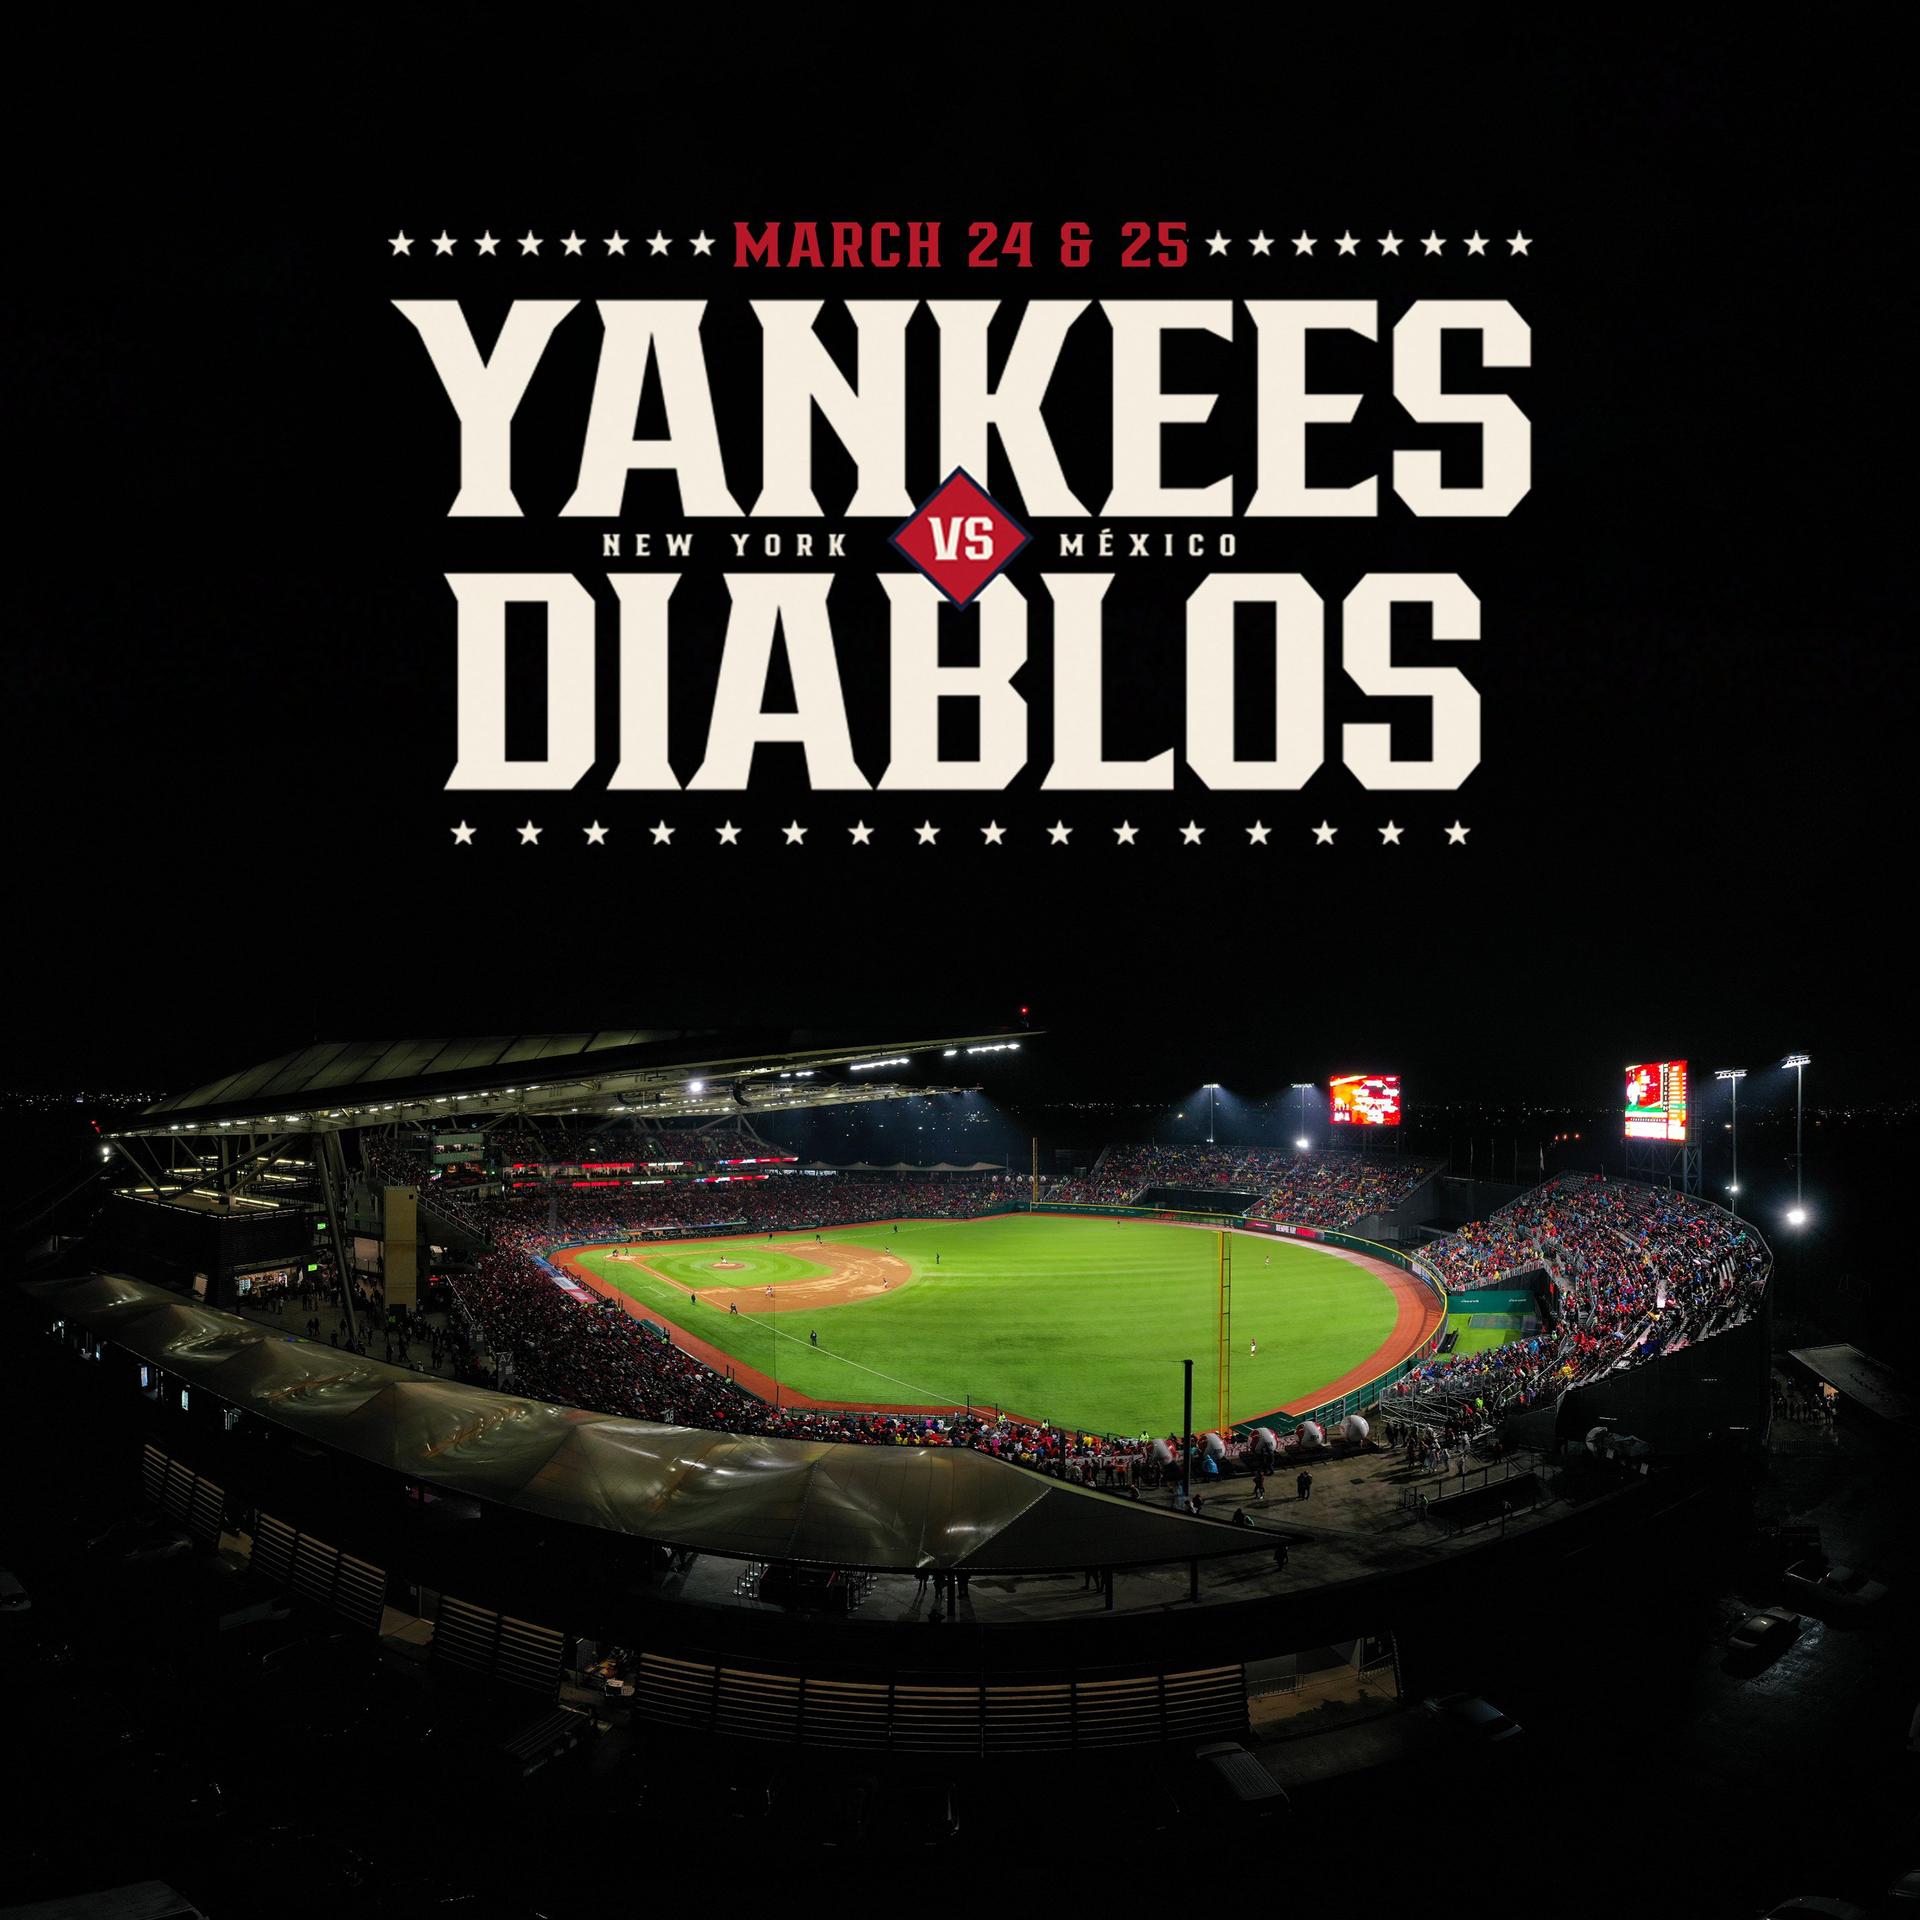 Yankees vs. Diablos graphic